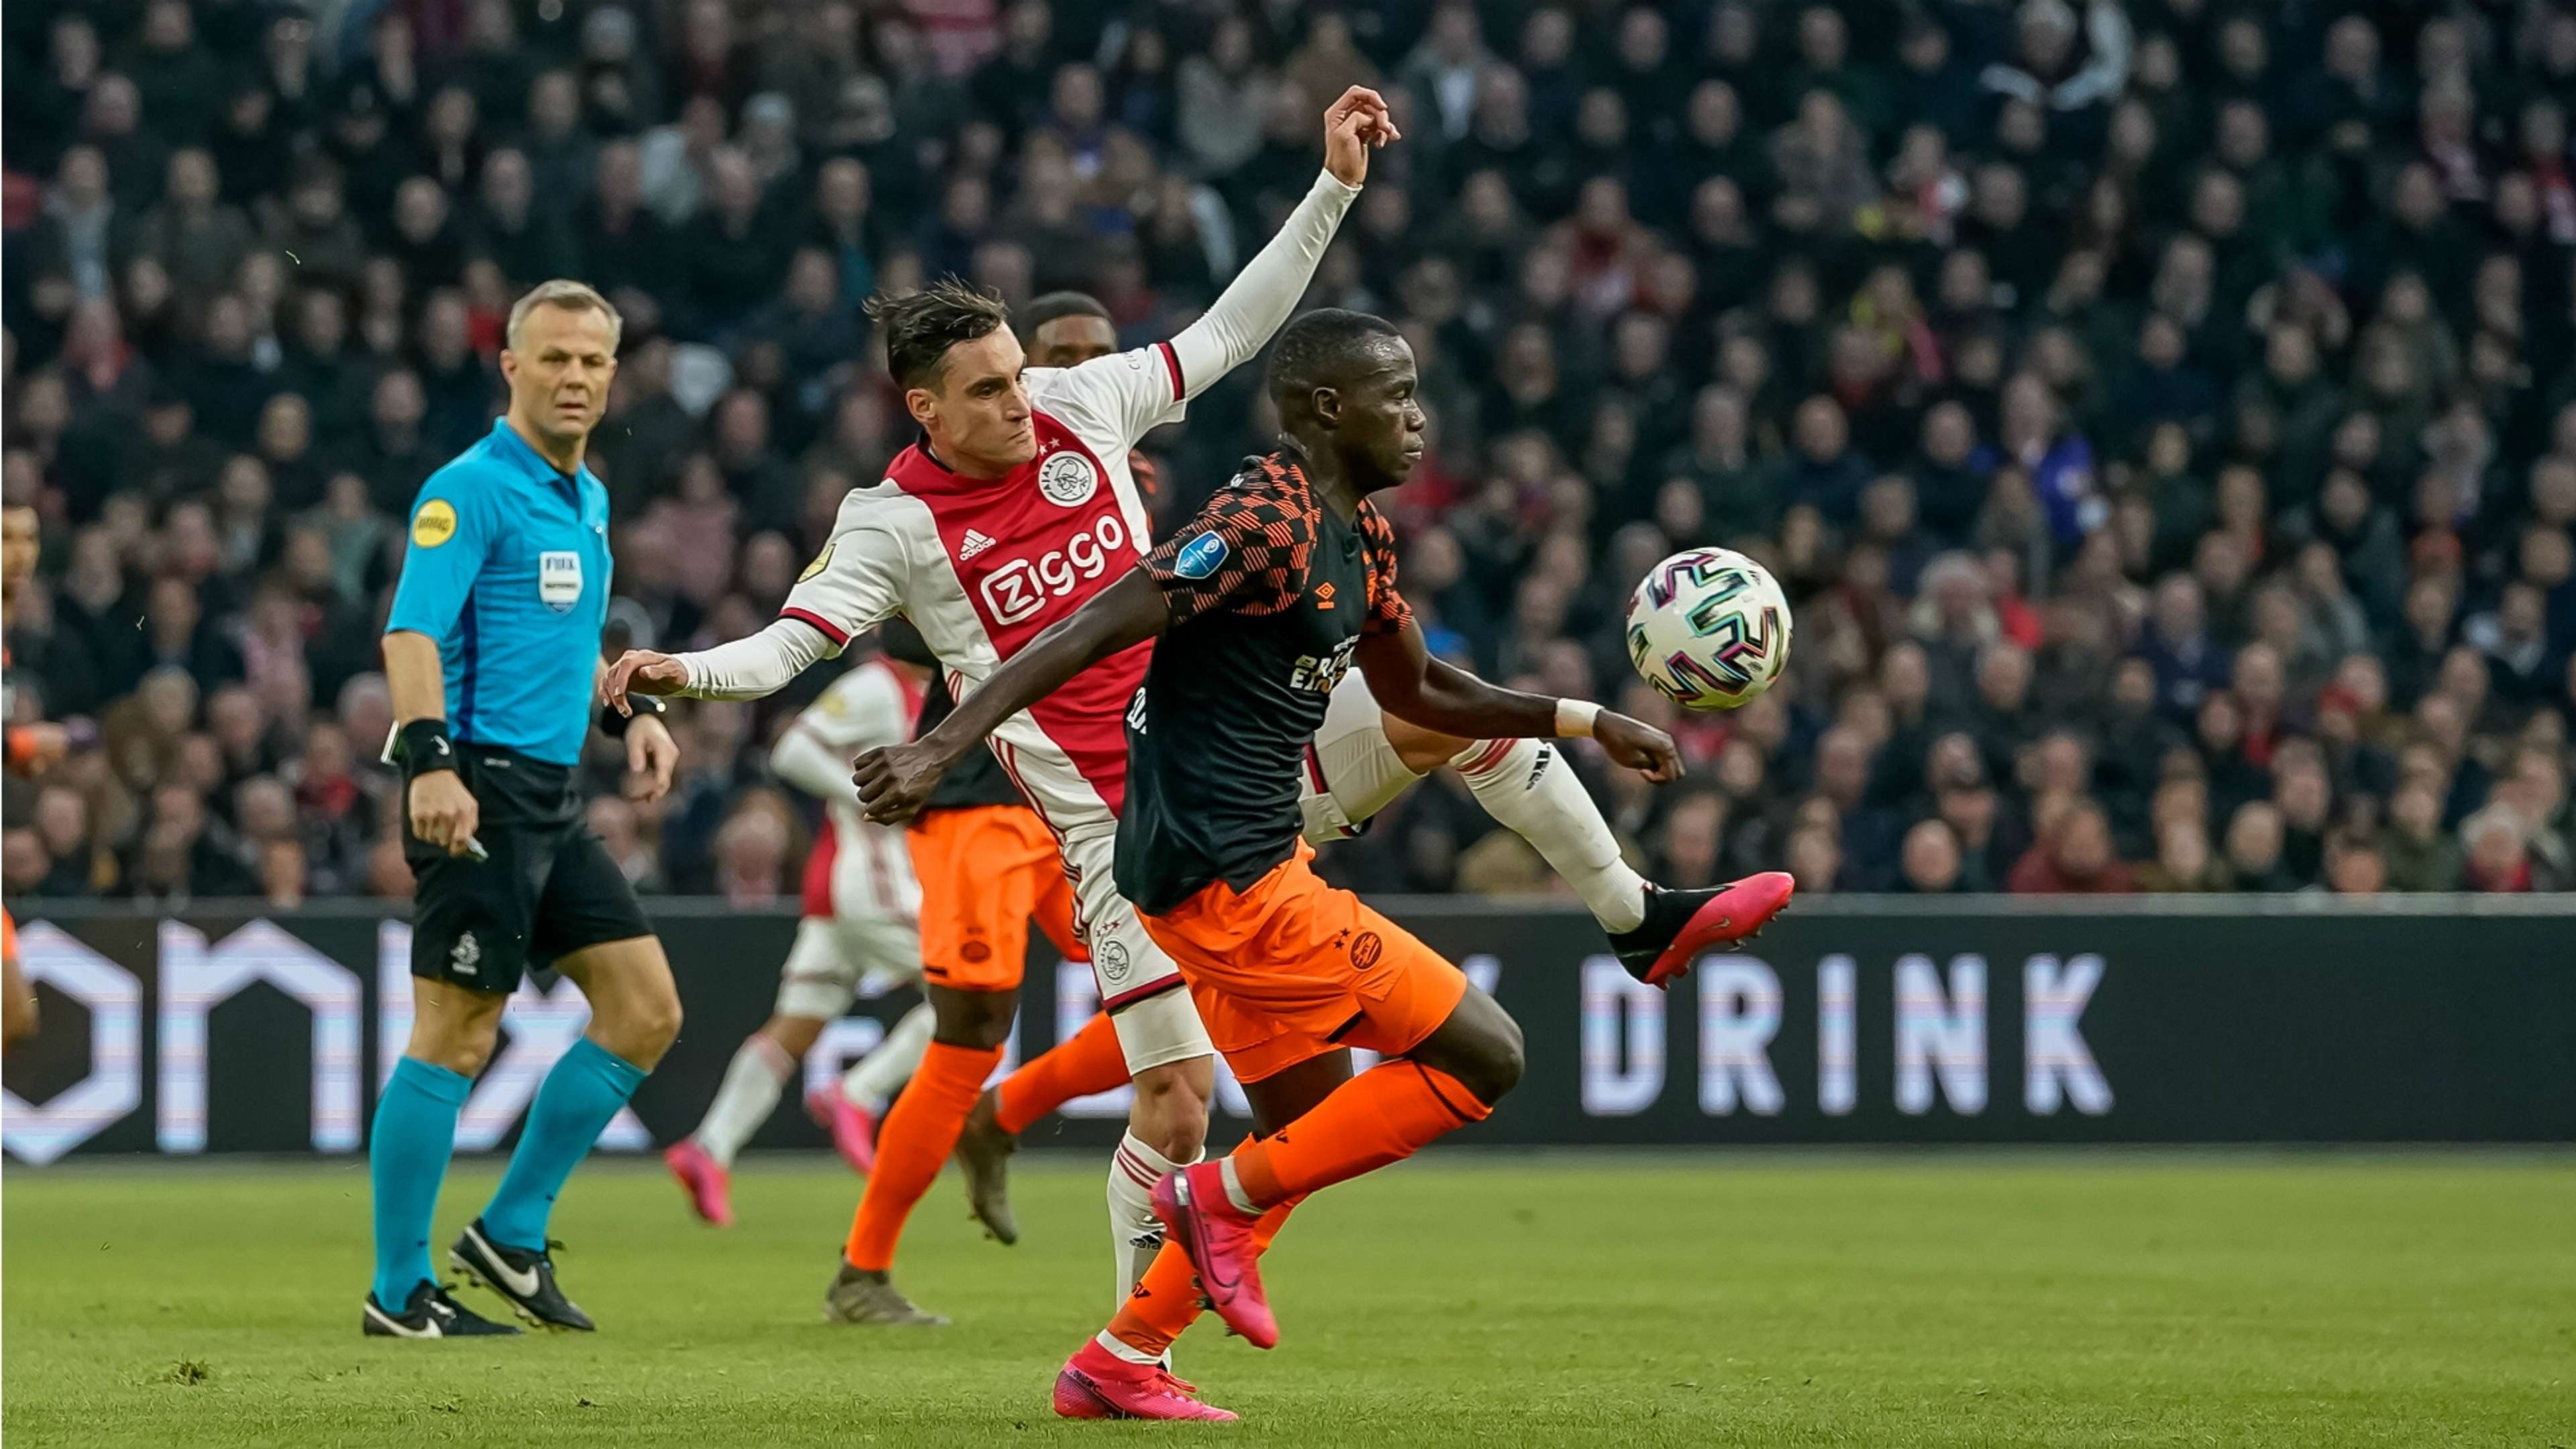 Ajax - PSV, 02022020 *GOAL NETHERLANDS ONLY*